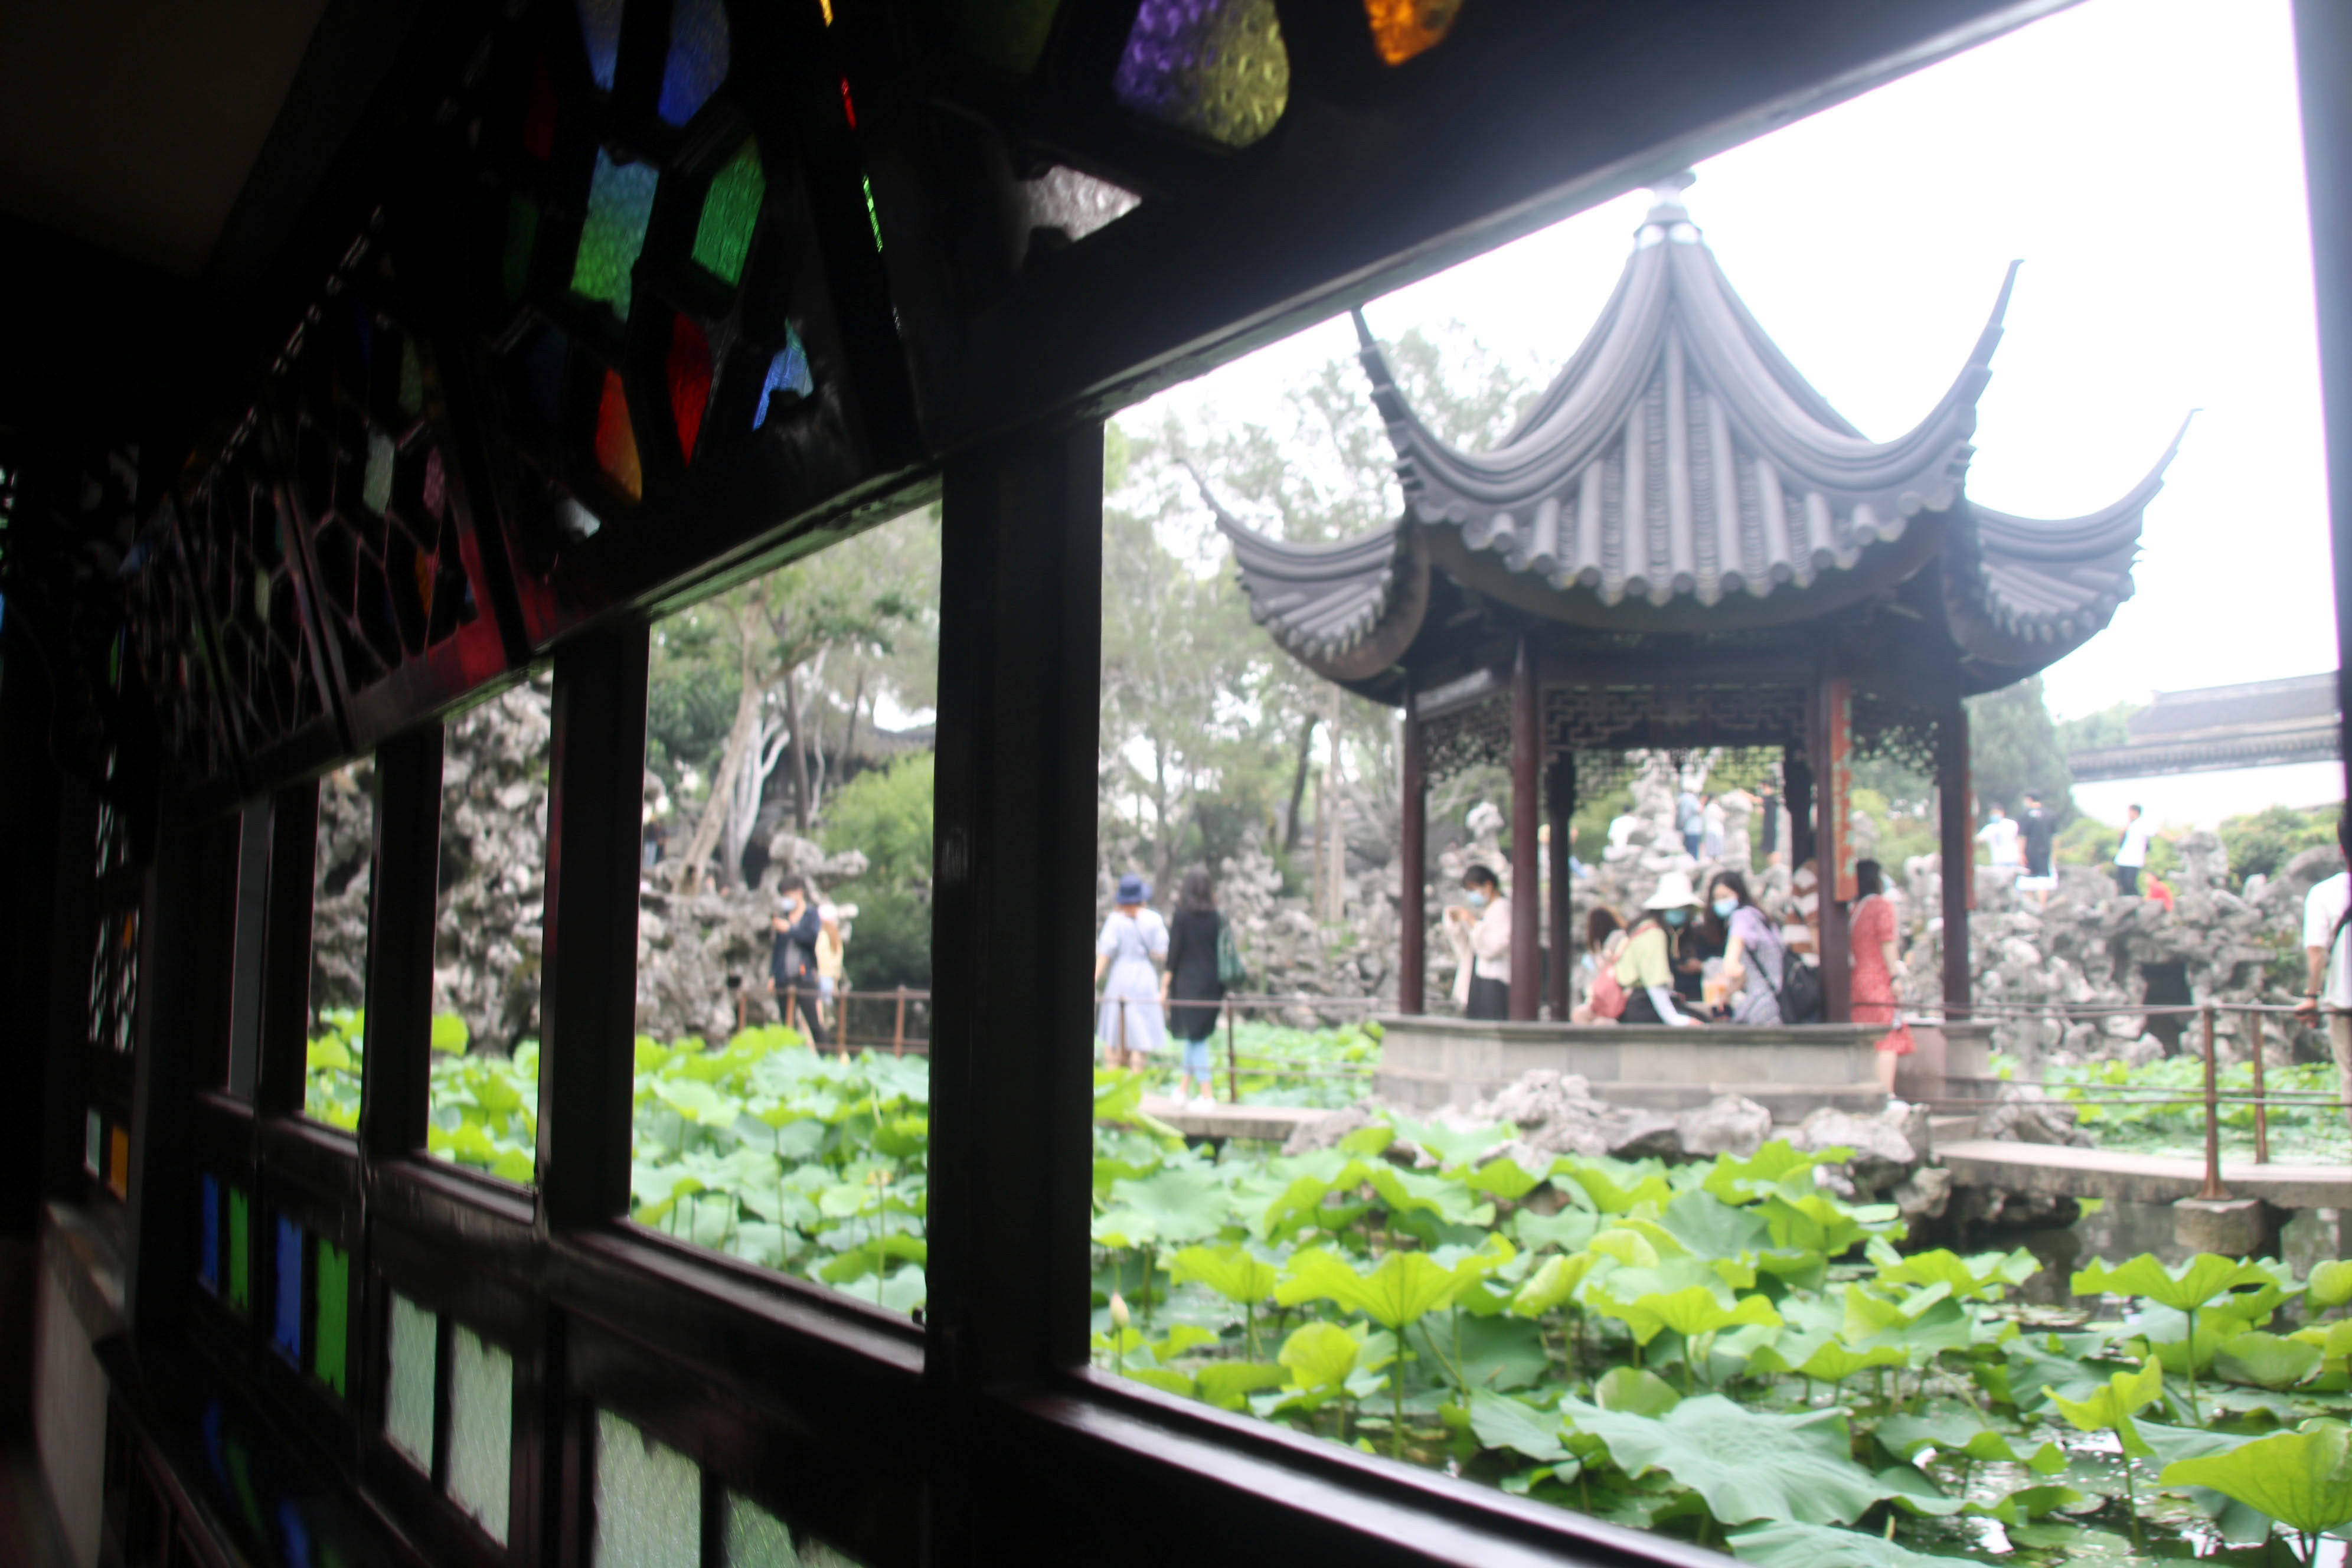 天,江苏苏州雨后开气转好,市民和游客来到苏州古典园林狮子林观光游览